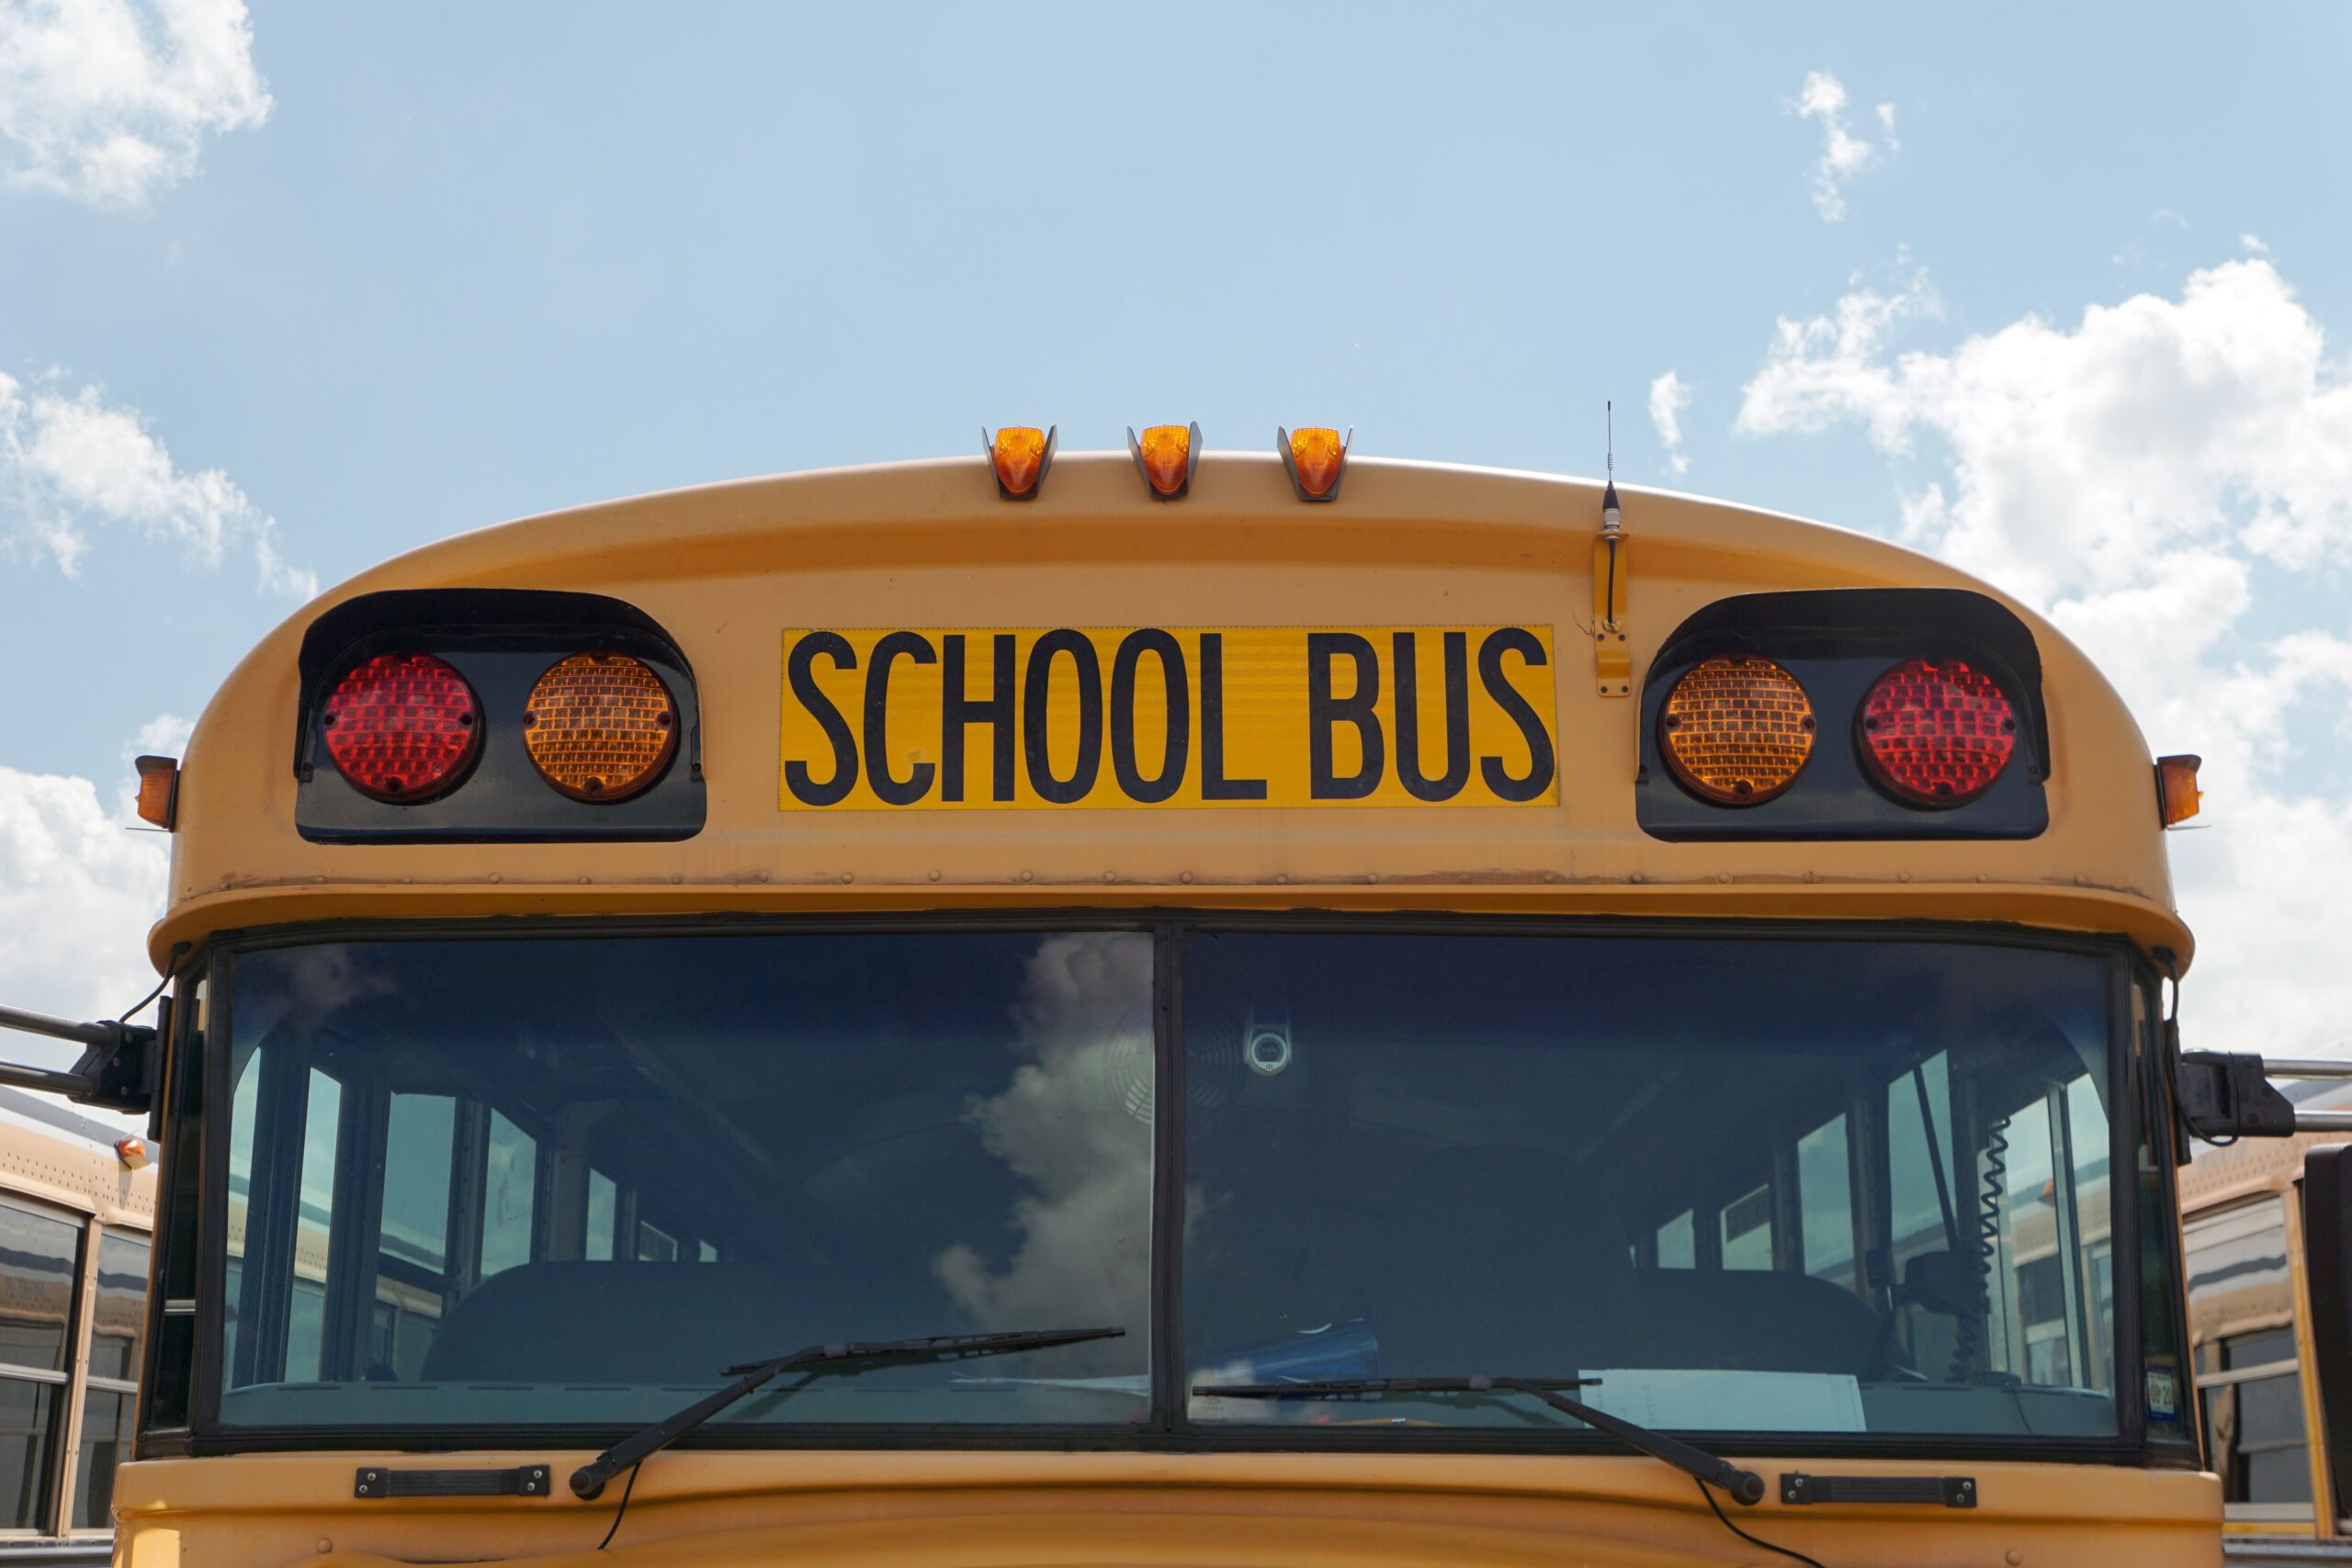 School bus in front of blue sky